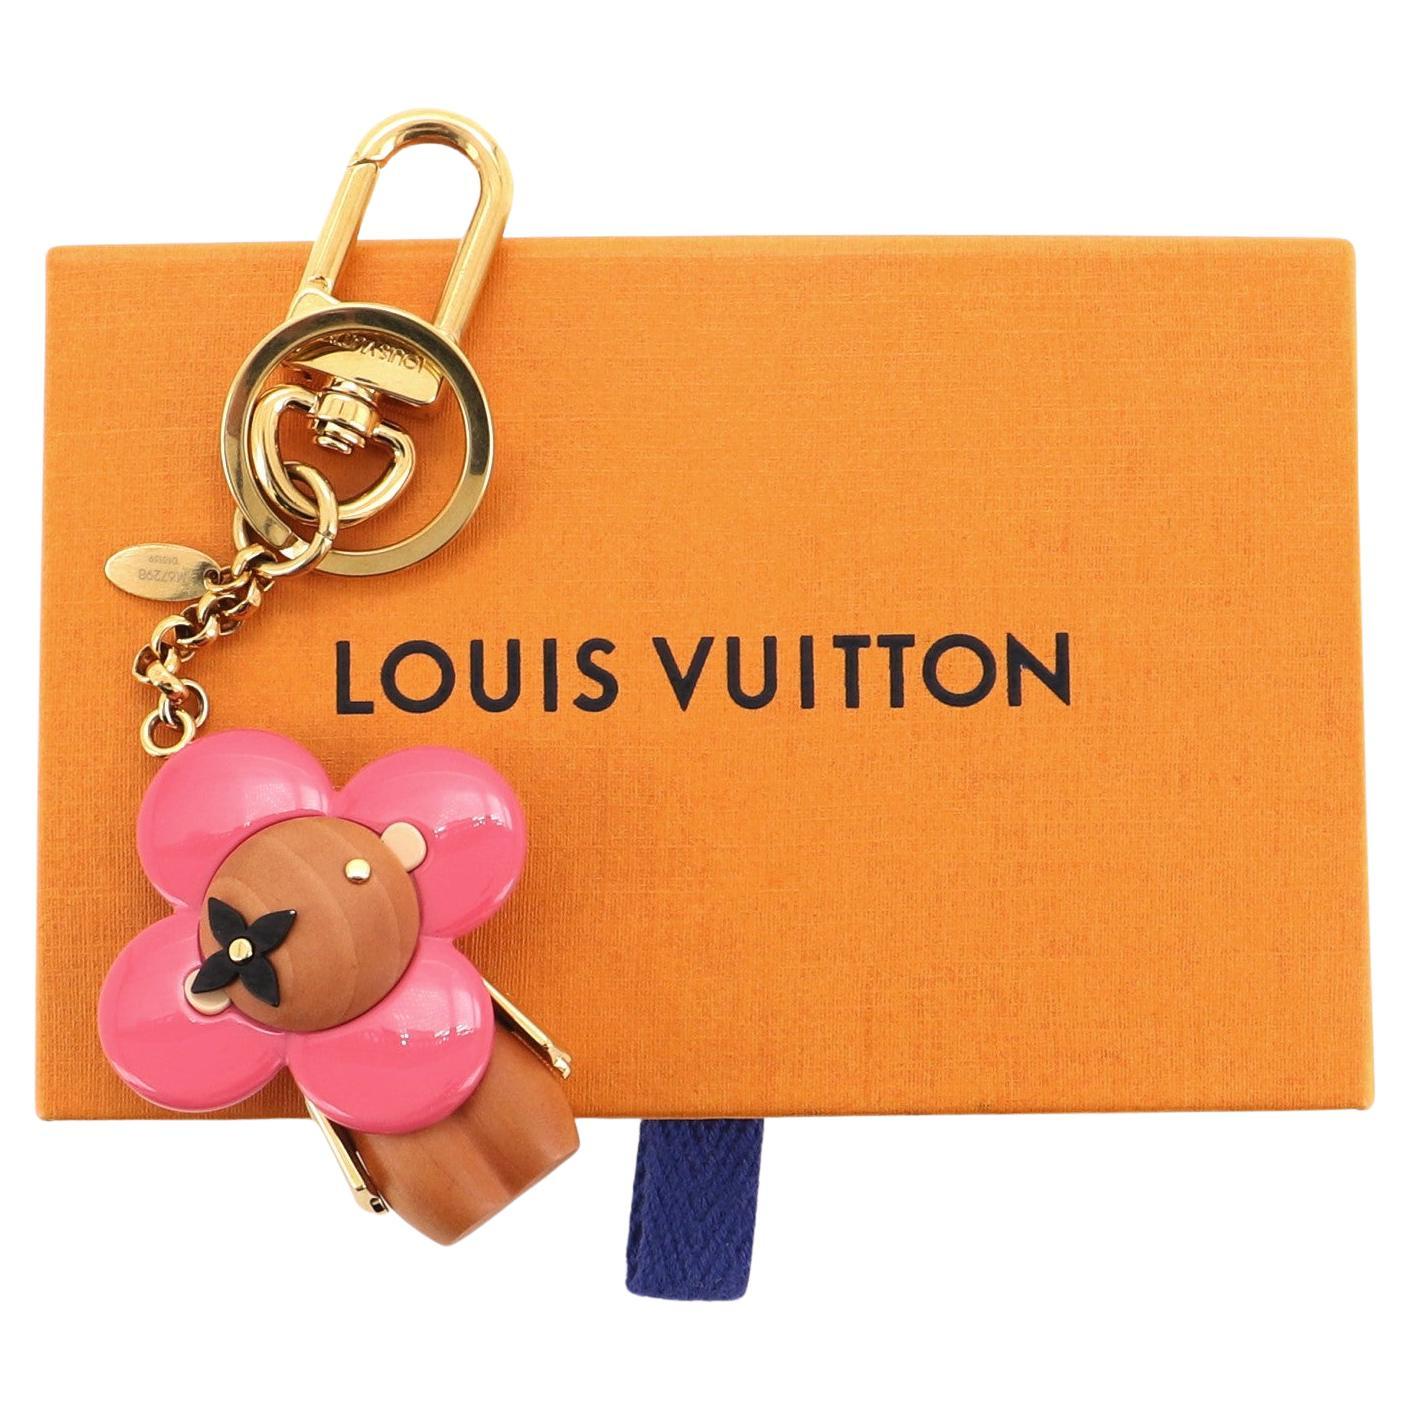 Louis Vuitton  Accessories  Louis Vuitton Vivienne Bag Charm  Poshmark